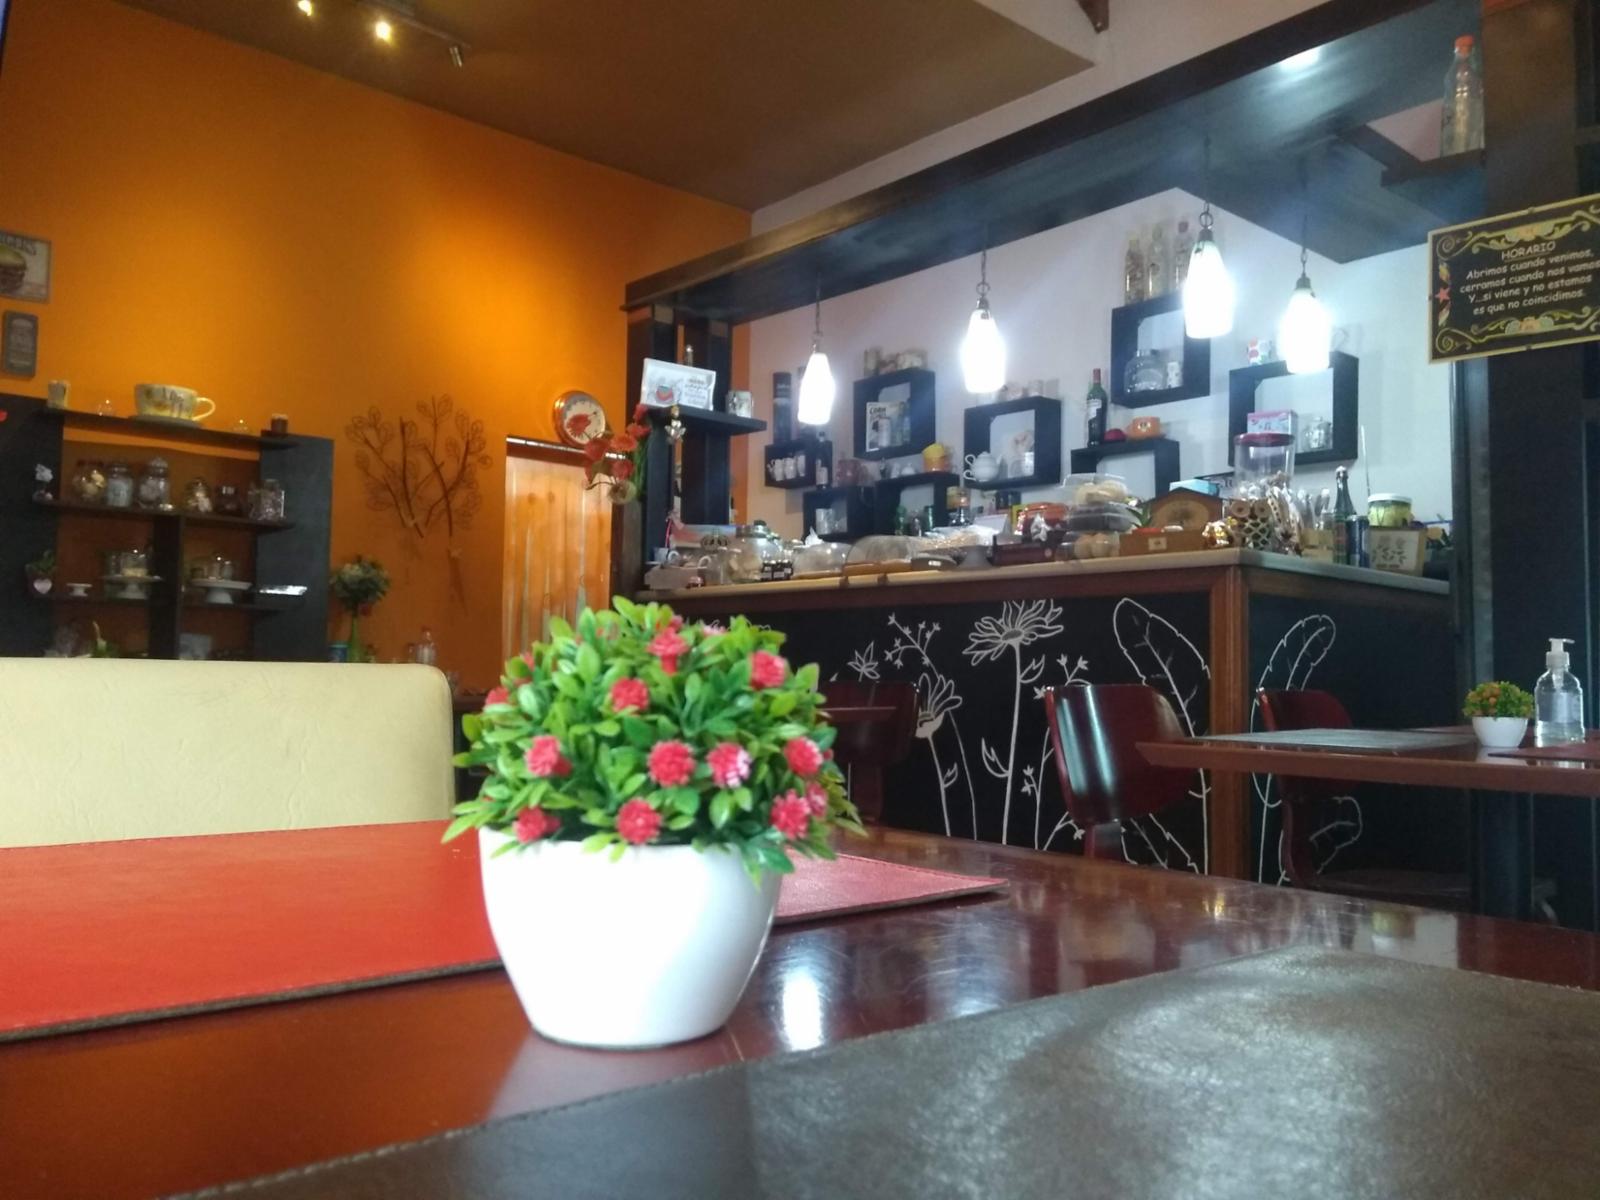 VENTA de Fondo de Comercio + Local - Cafetería - Villa General Belgrano